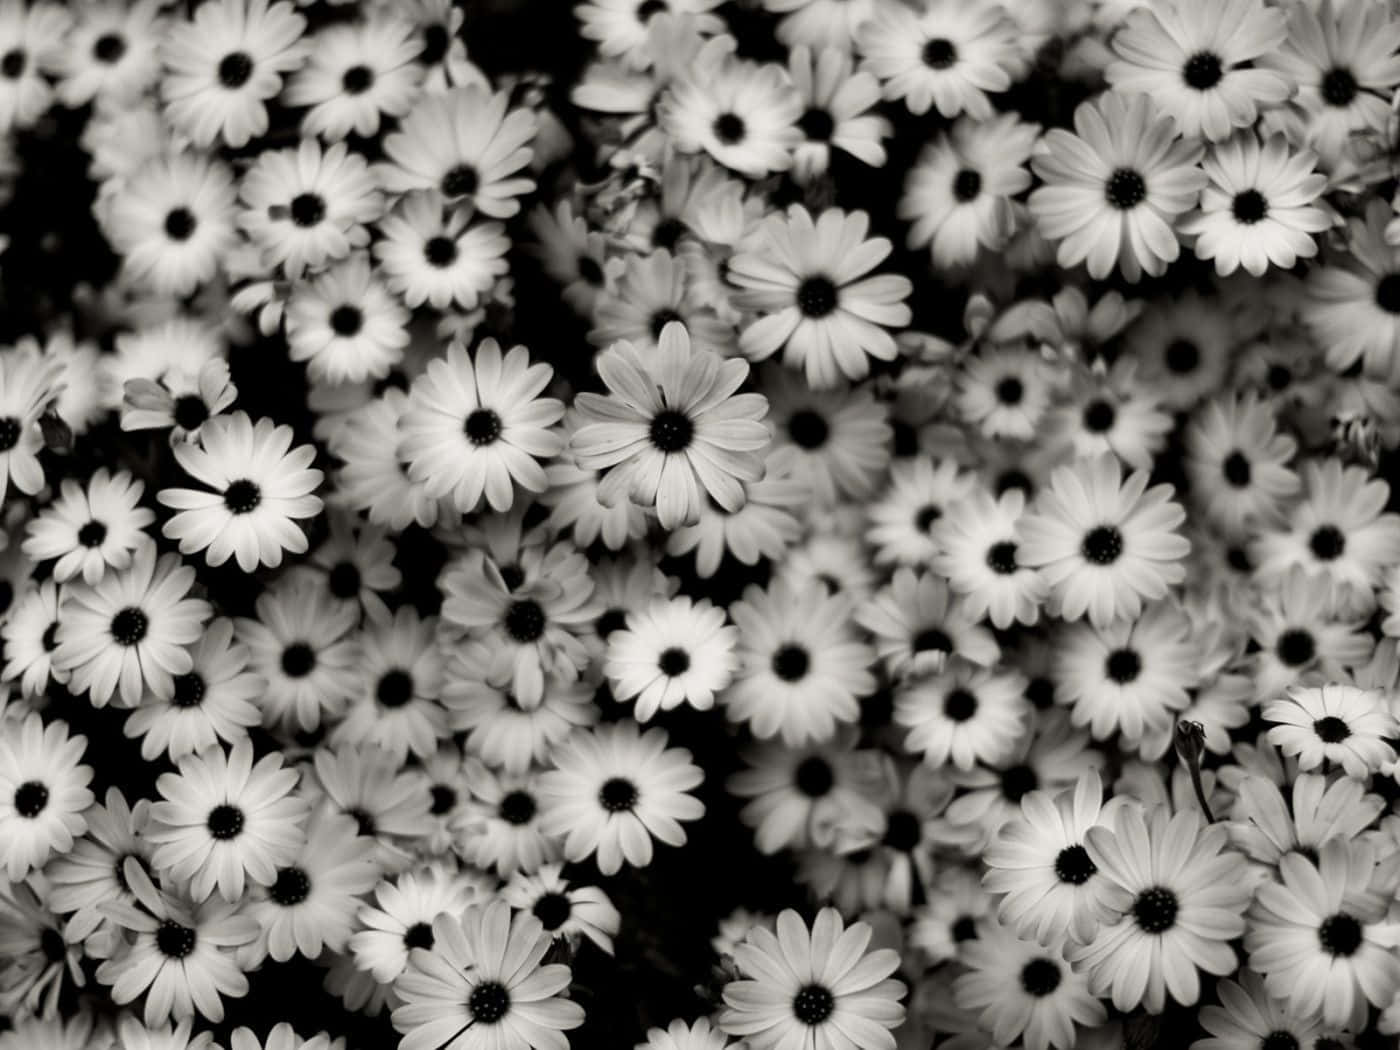 Einebezaubernde Schwarz-weiße Blume